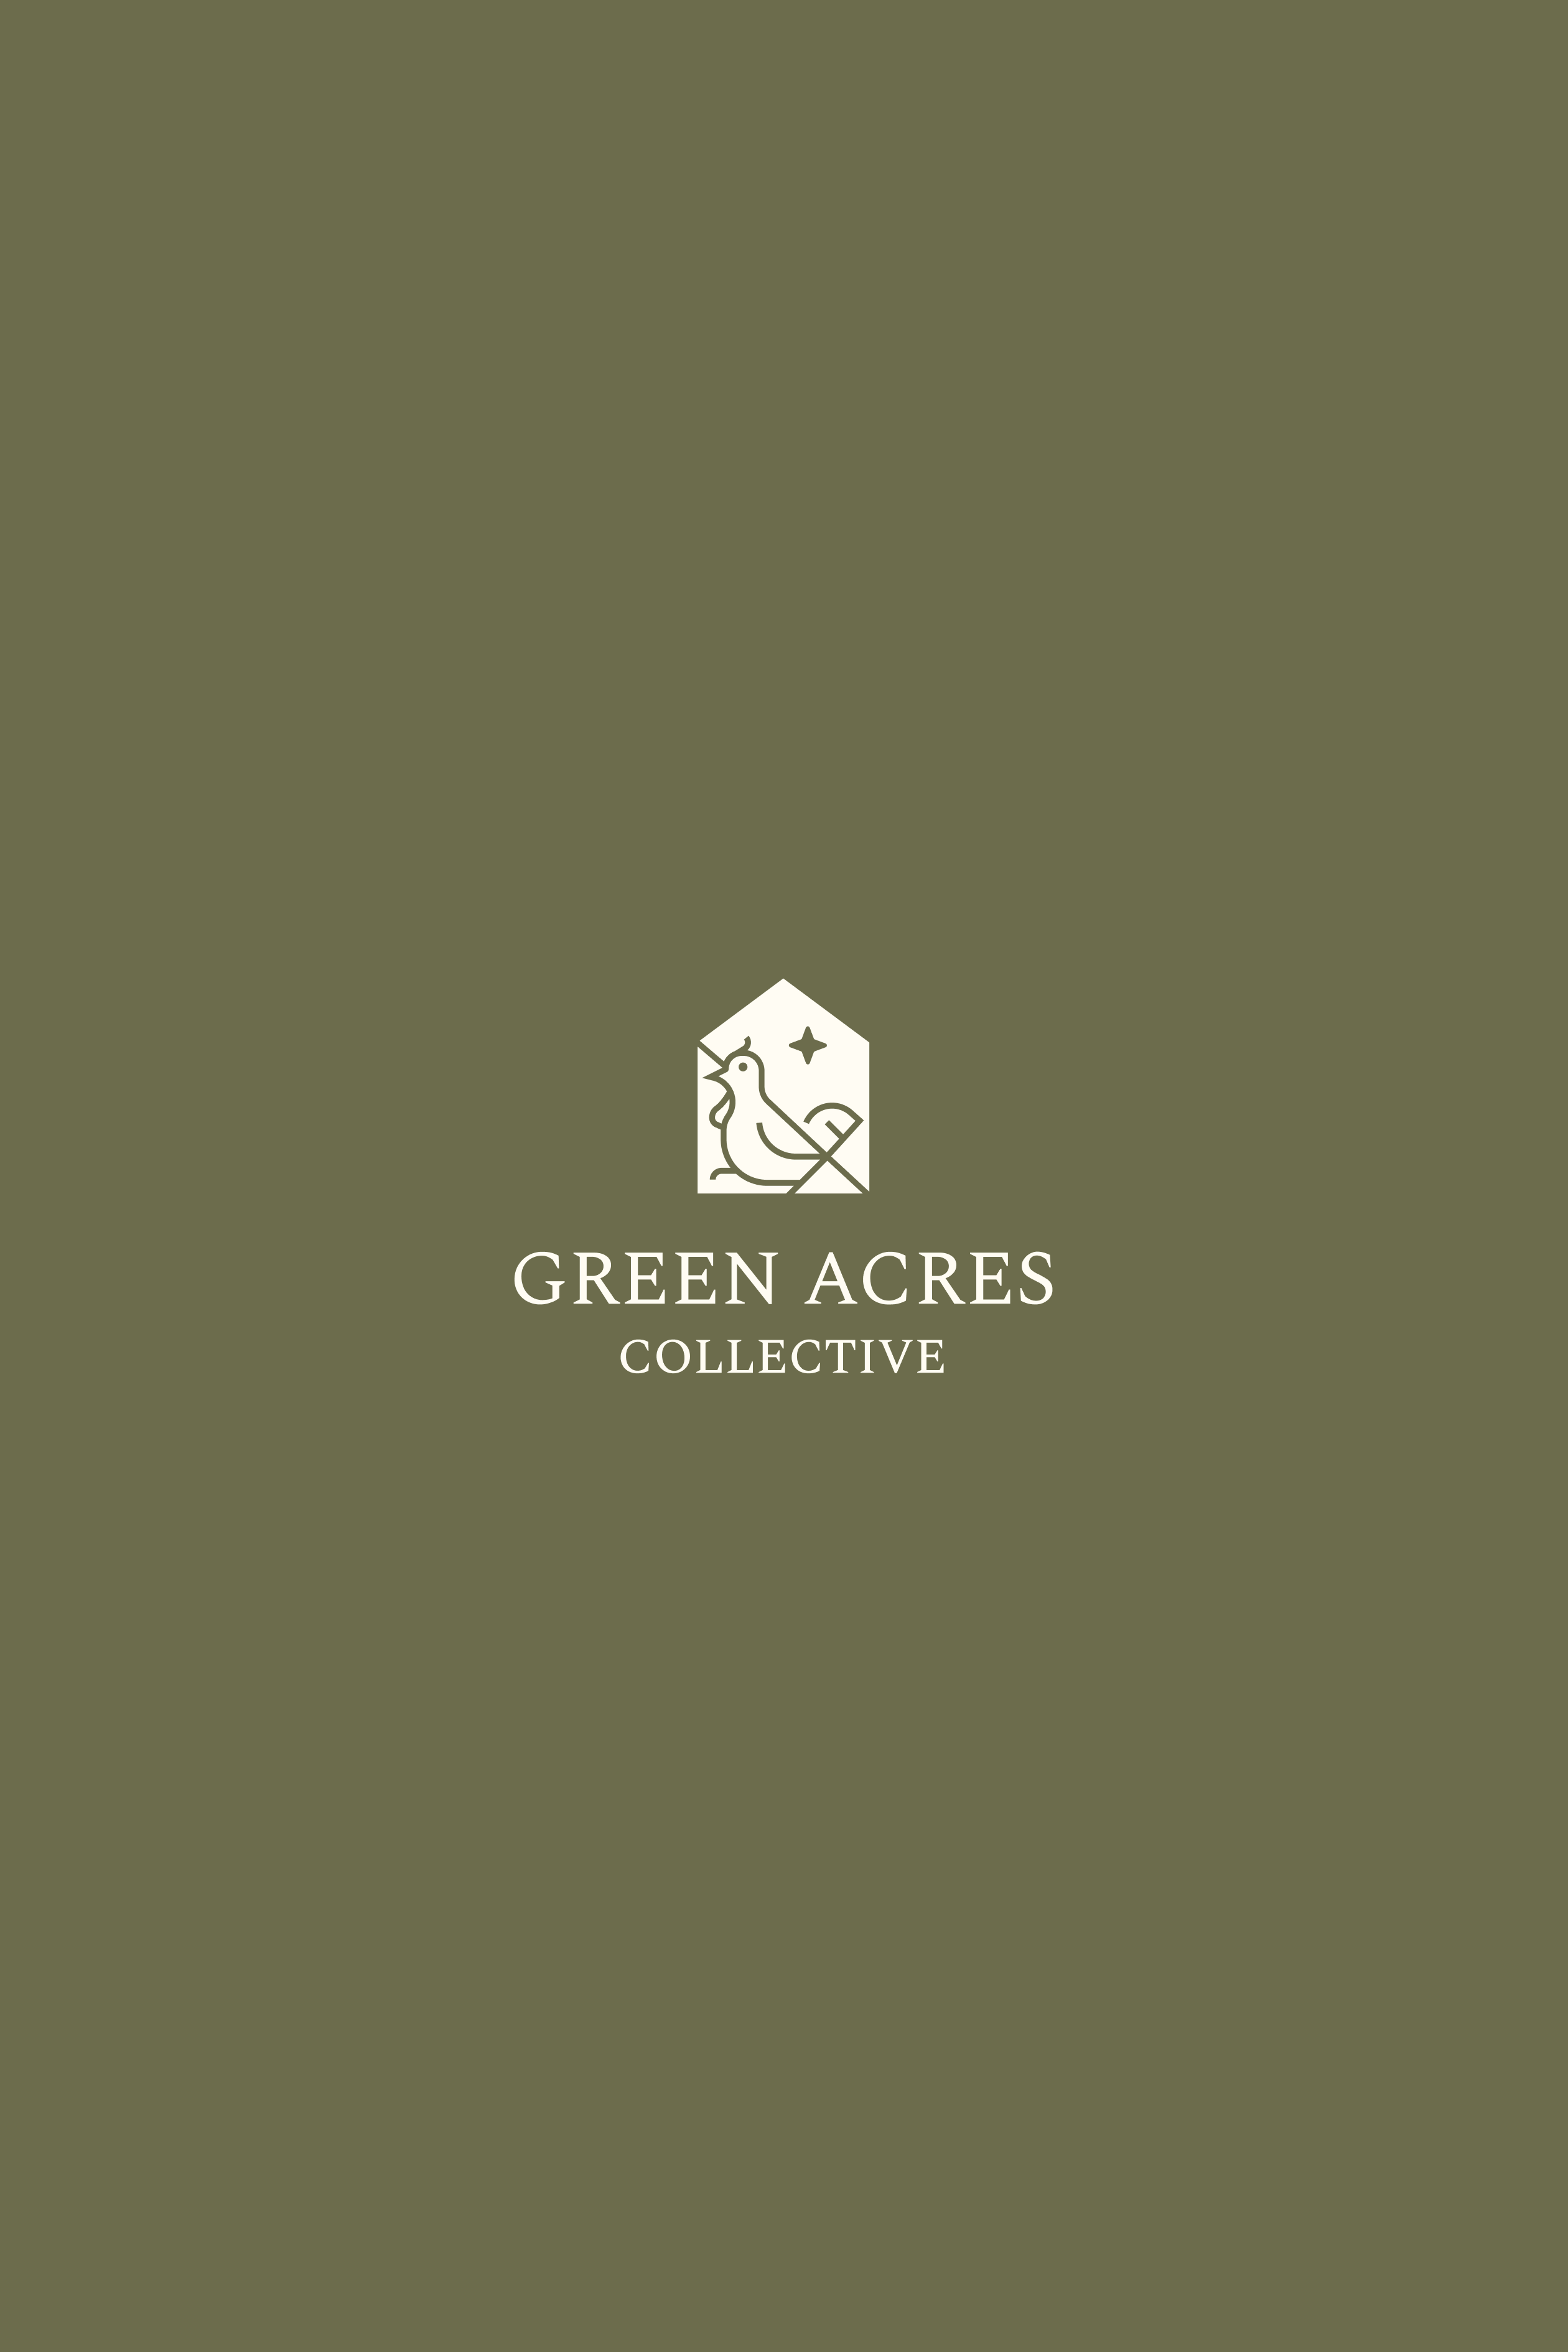 green arces logo